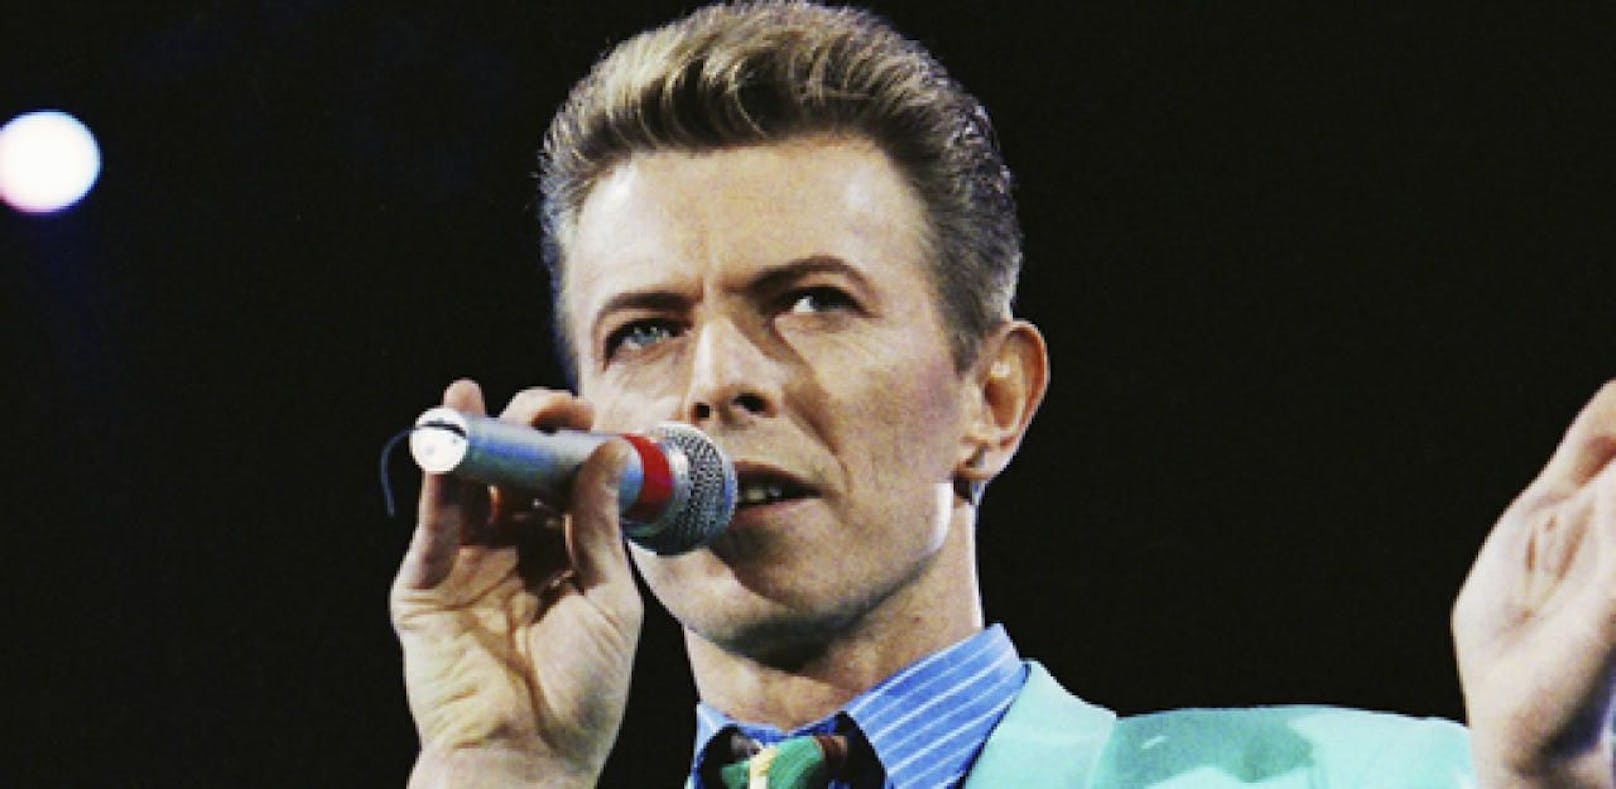 Placebo veröffentlichen Reminiszenzen an Bowie